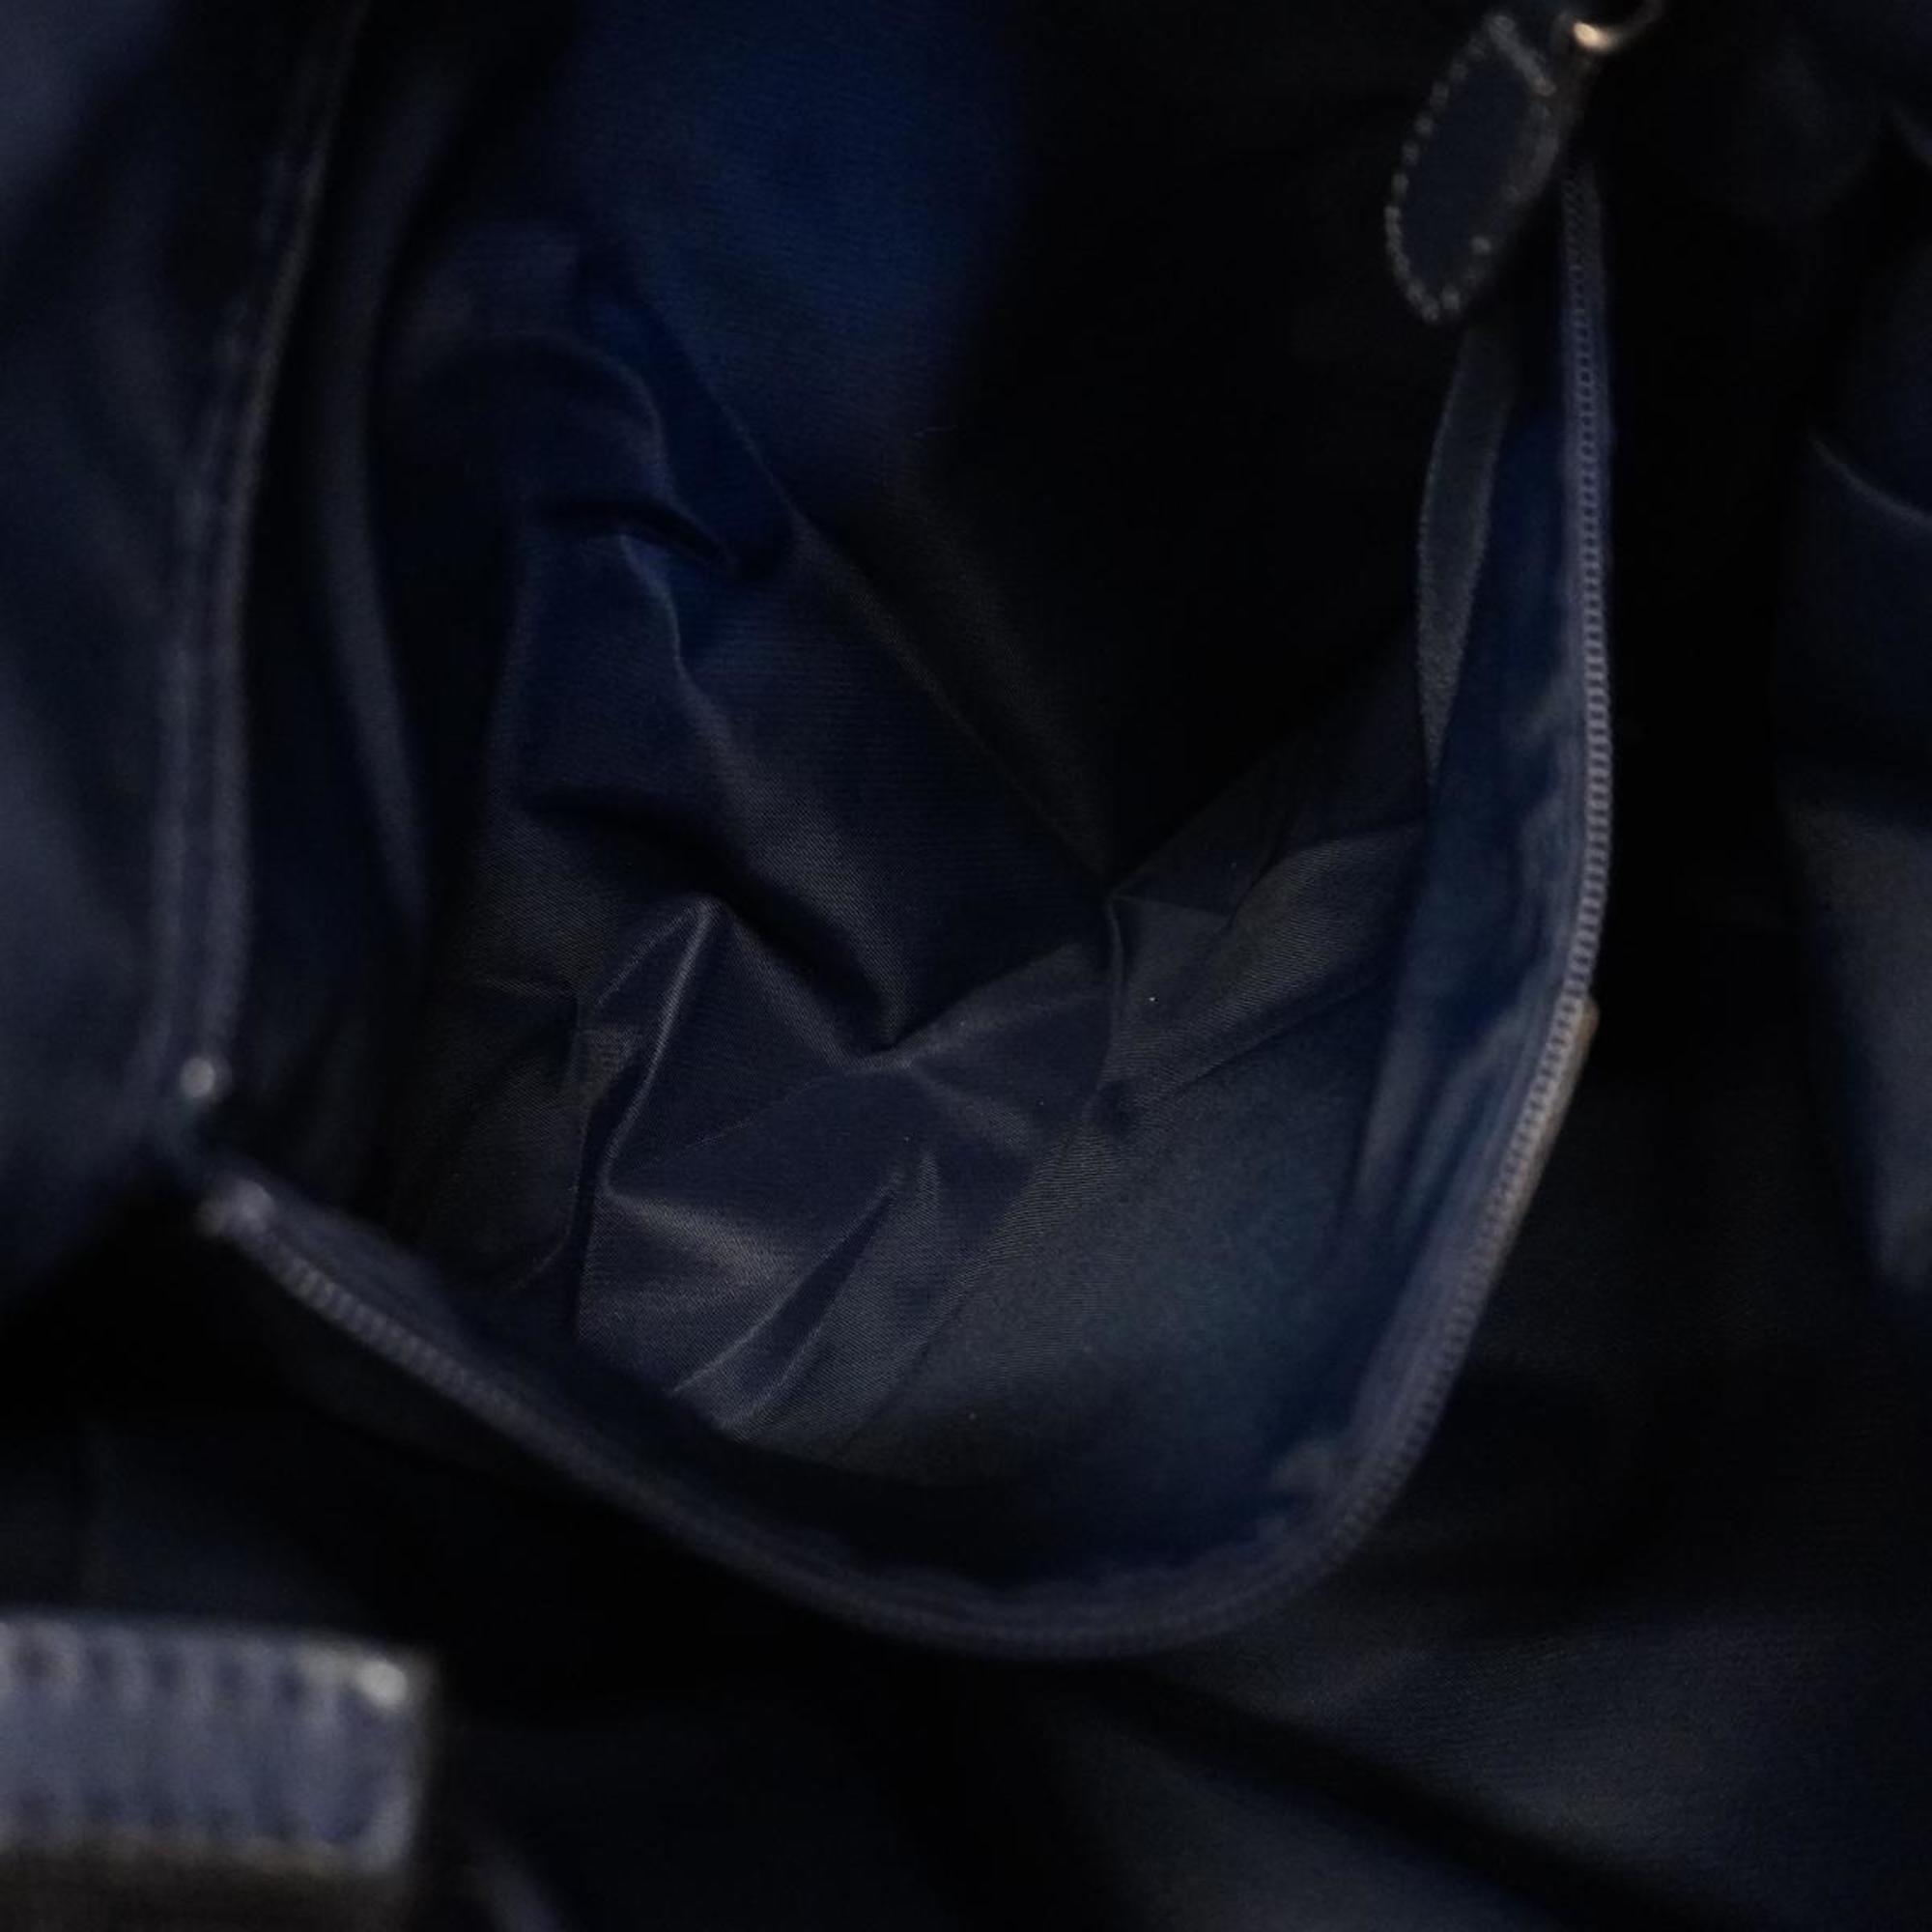 Christian Dior Shoulder Bag Trotter Canvas Navy Black Women's